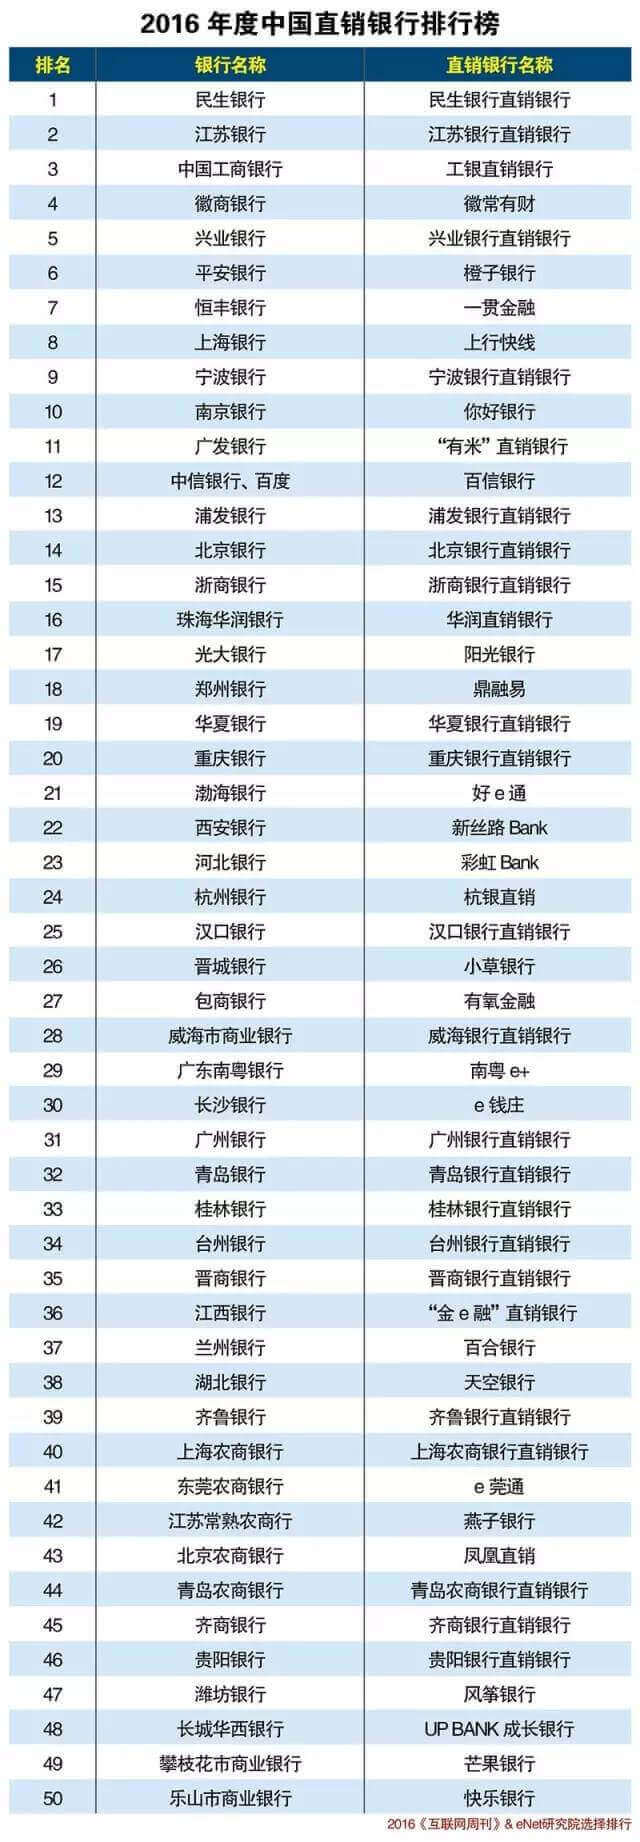 直销排行榜_甘肃银行入围2020年度中国直销银行排行榜前10名